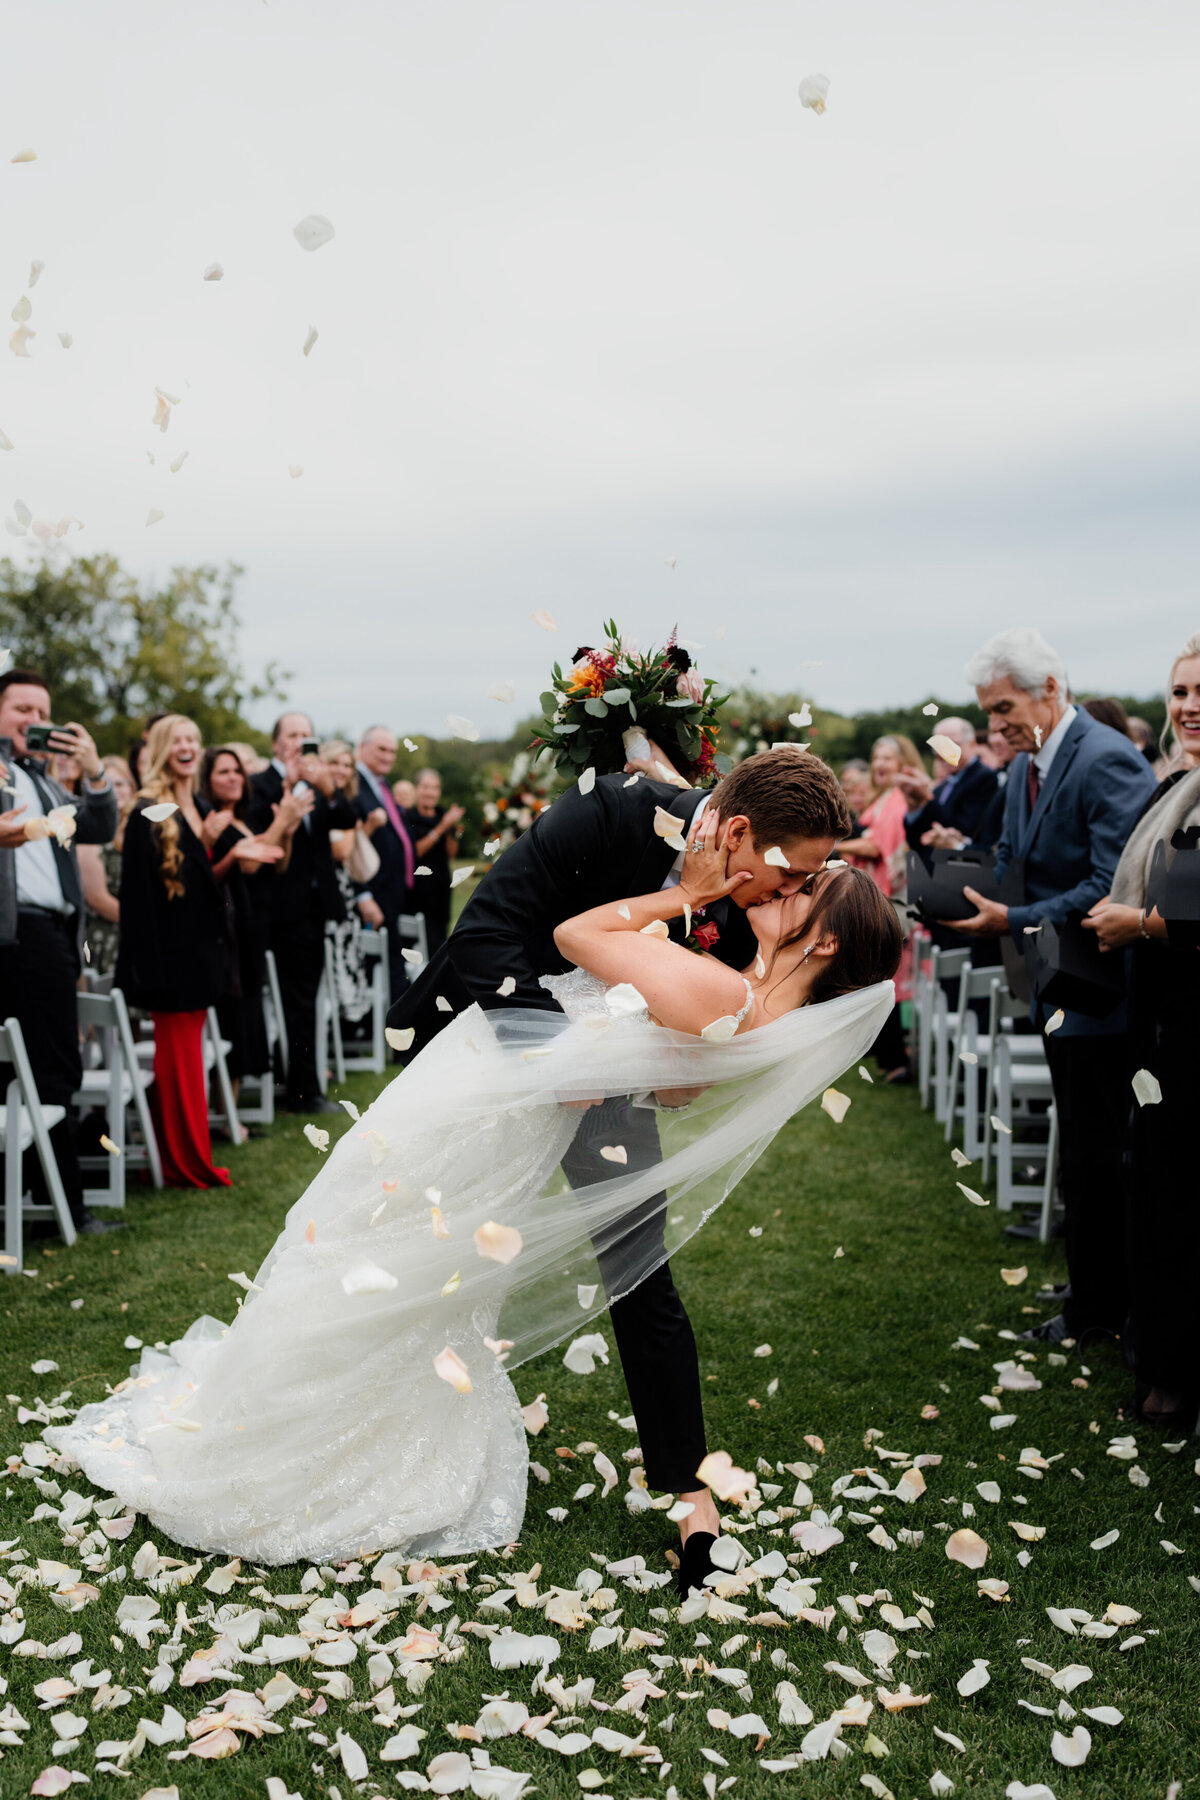 Aspen-Avenue-Chicago-Wedding-Photographer-Ceremony-Confetti-Hype-Fun